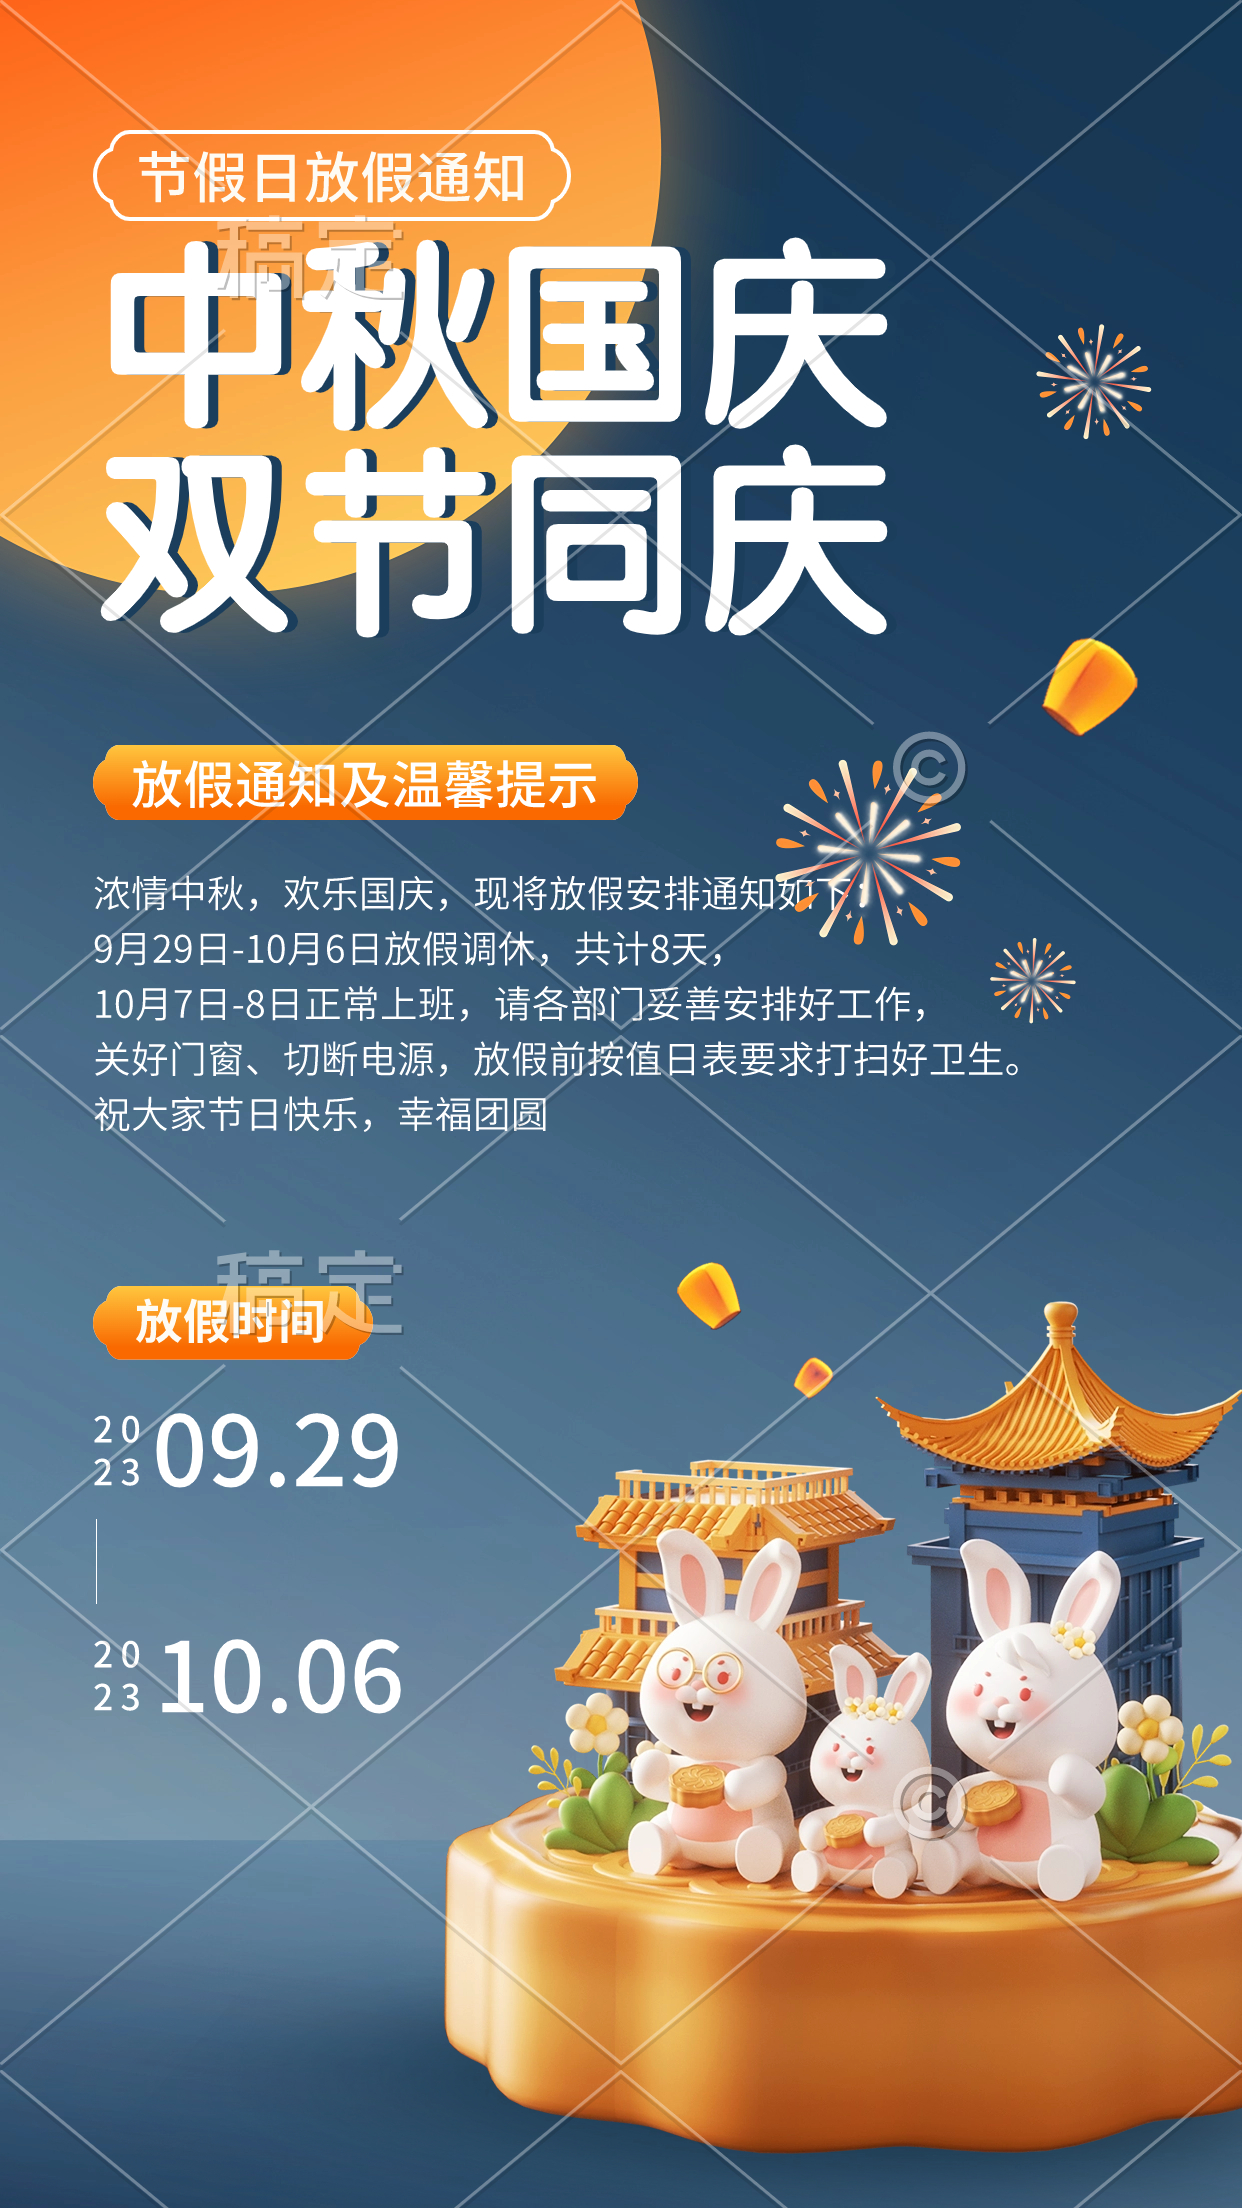 中秋节国庆节兴趣班放假通软3D风格手机海报.jpg